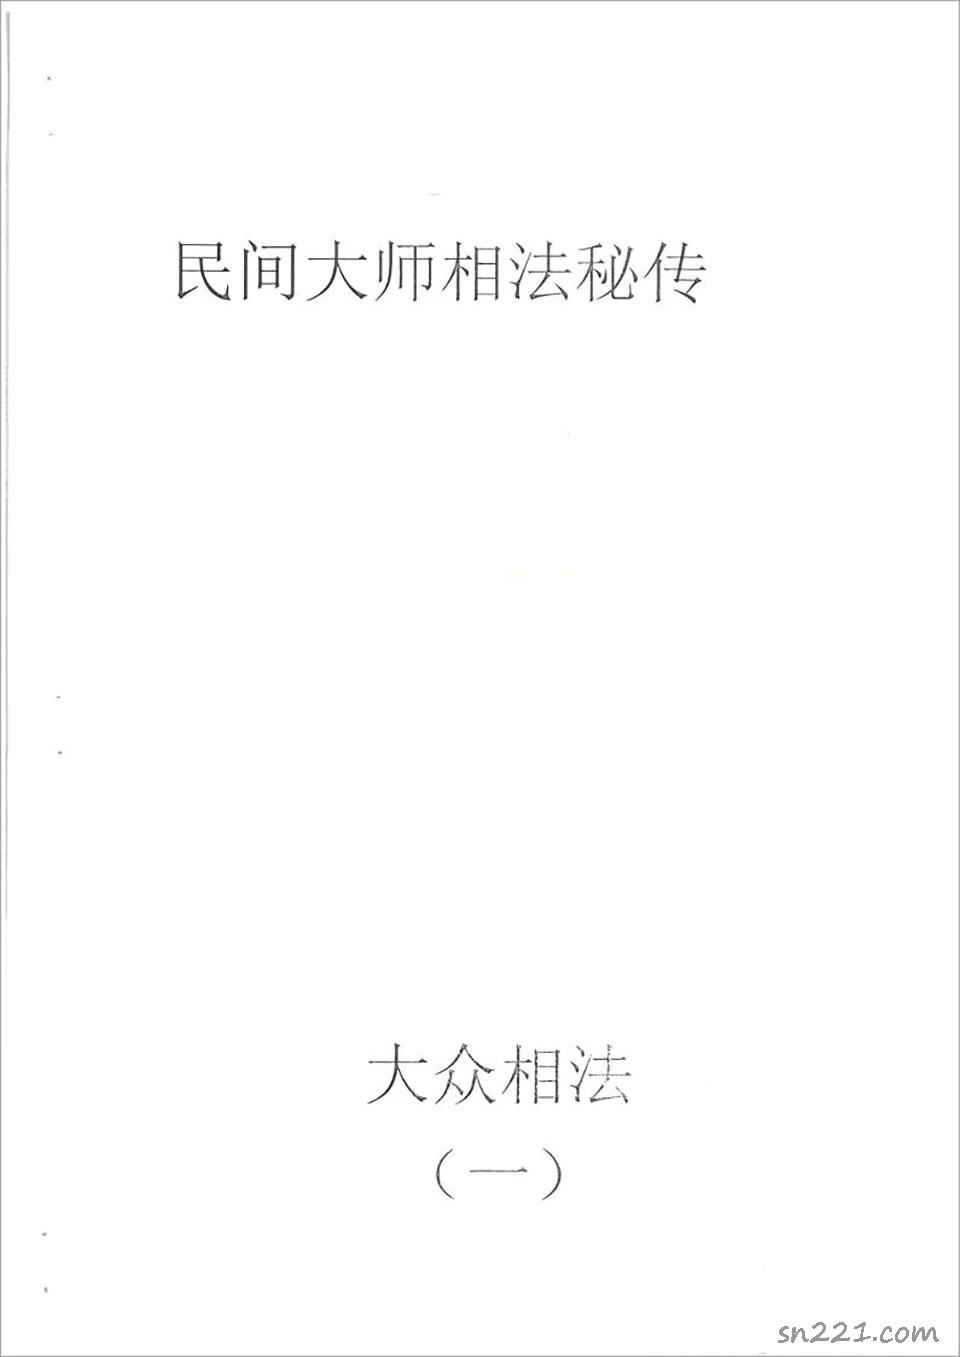 何培甫-大眾相法實戰授徒手寫資料1（60頁）.pdf